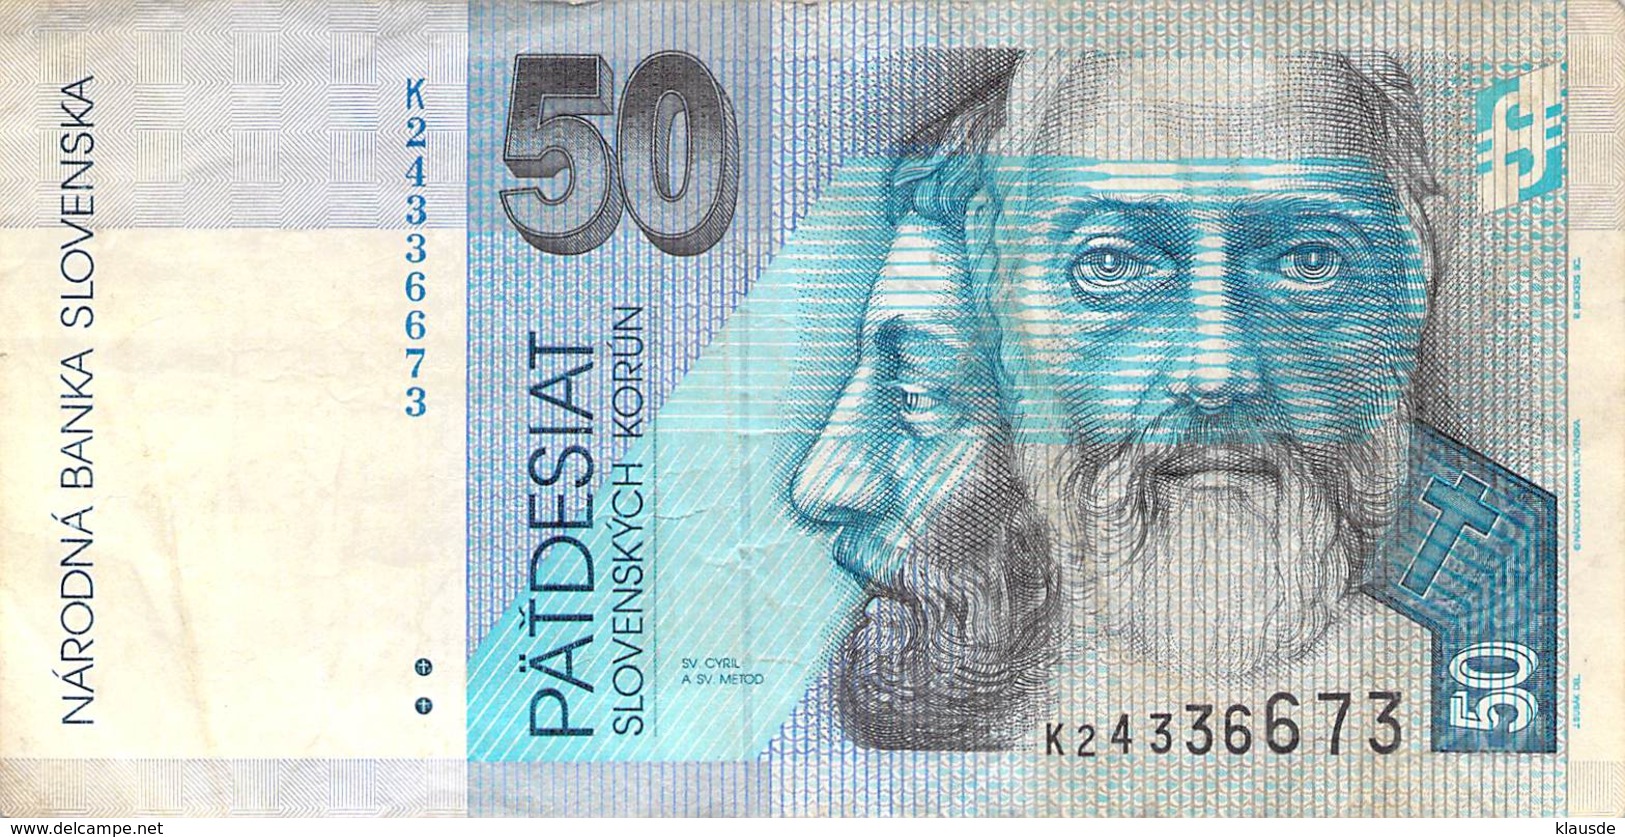 50 Kronen (Korun) Slovenska 2002 VF/F (III) - Slovenia